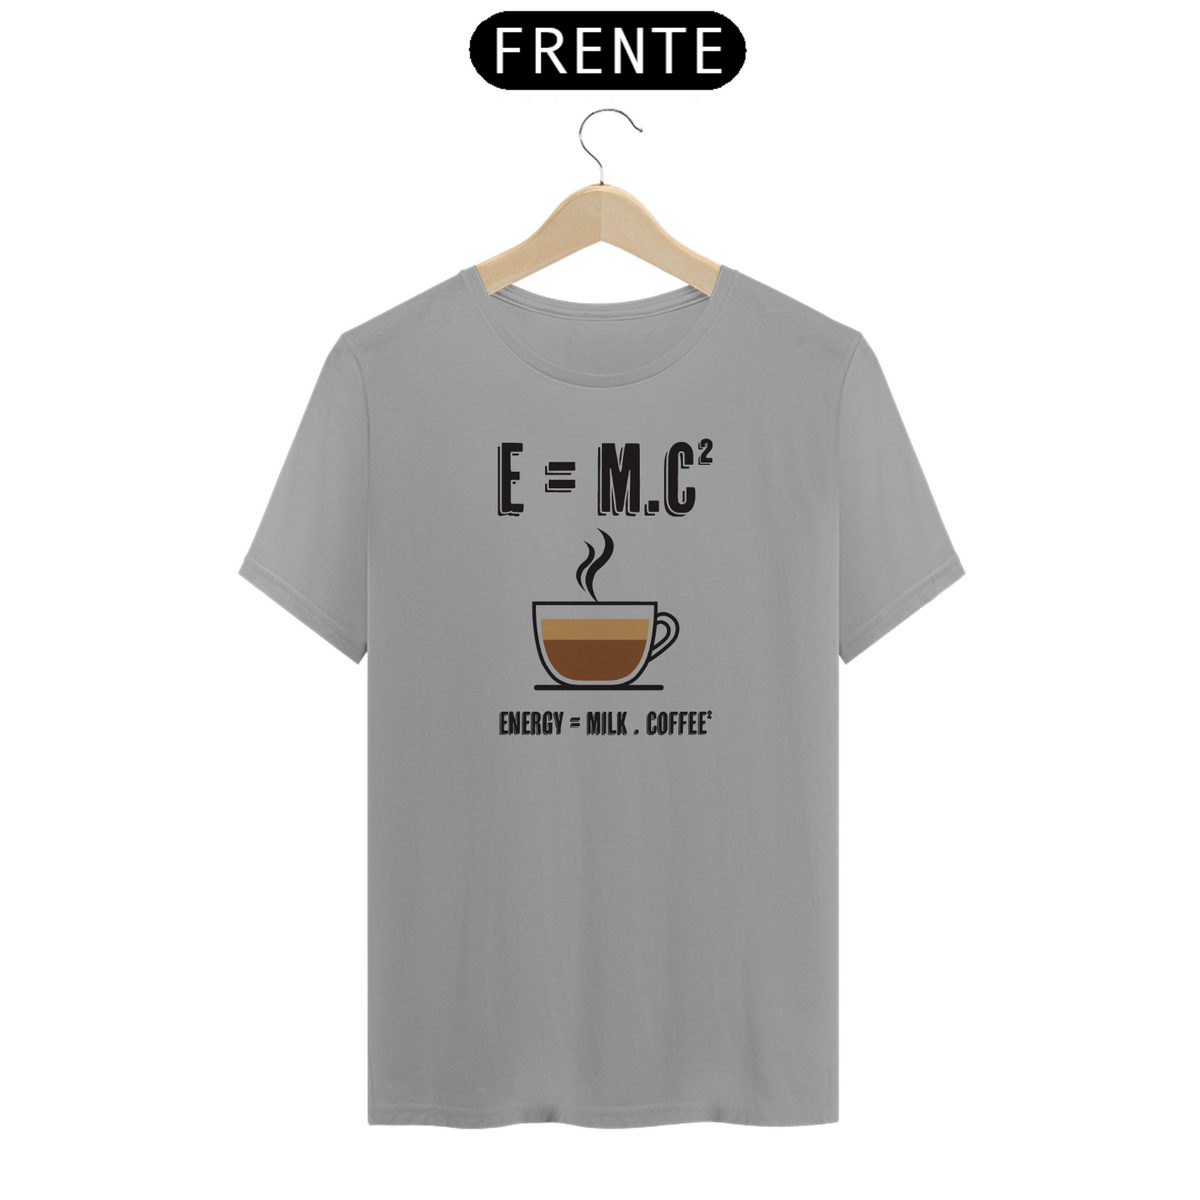 Nome do produto: E=mc2 - Energy = milk . coffee (cores claras)